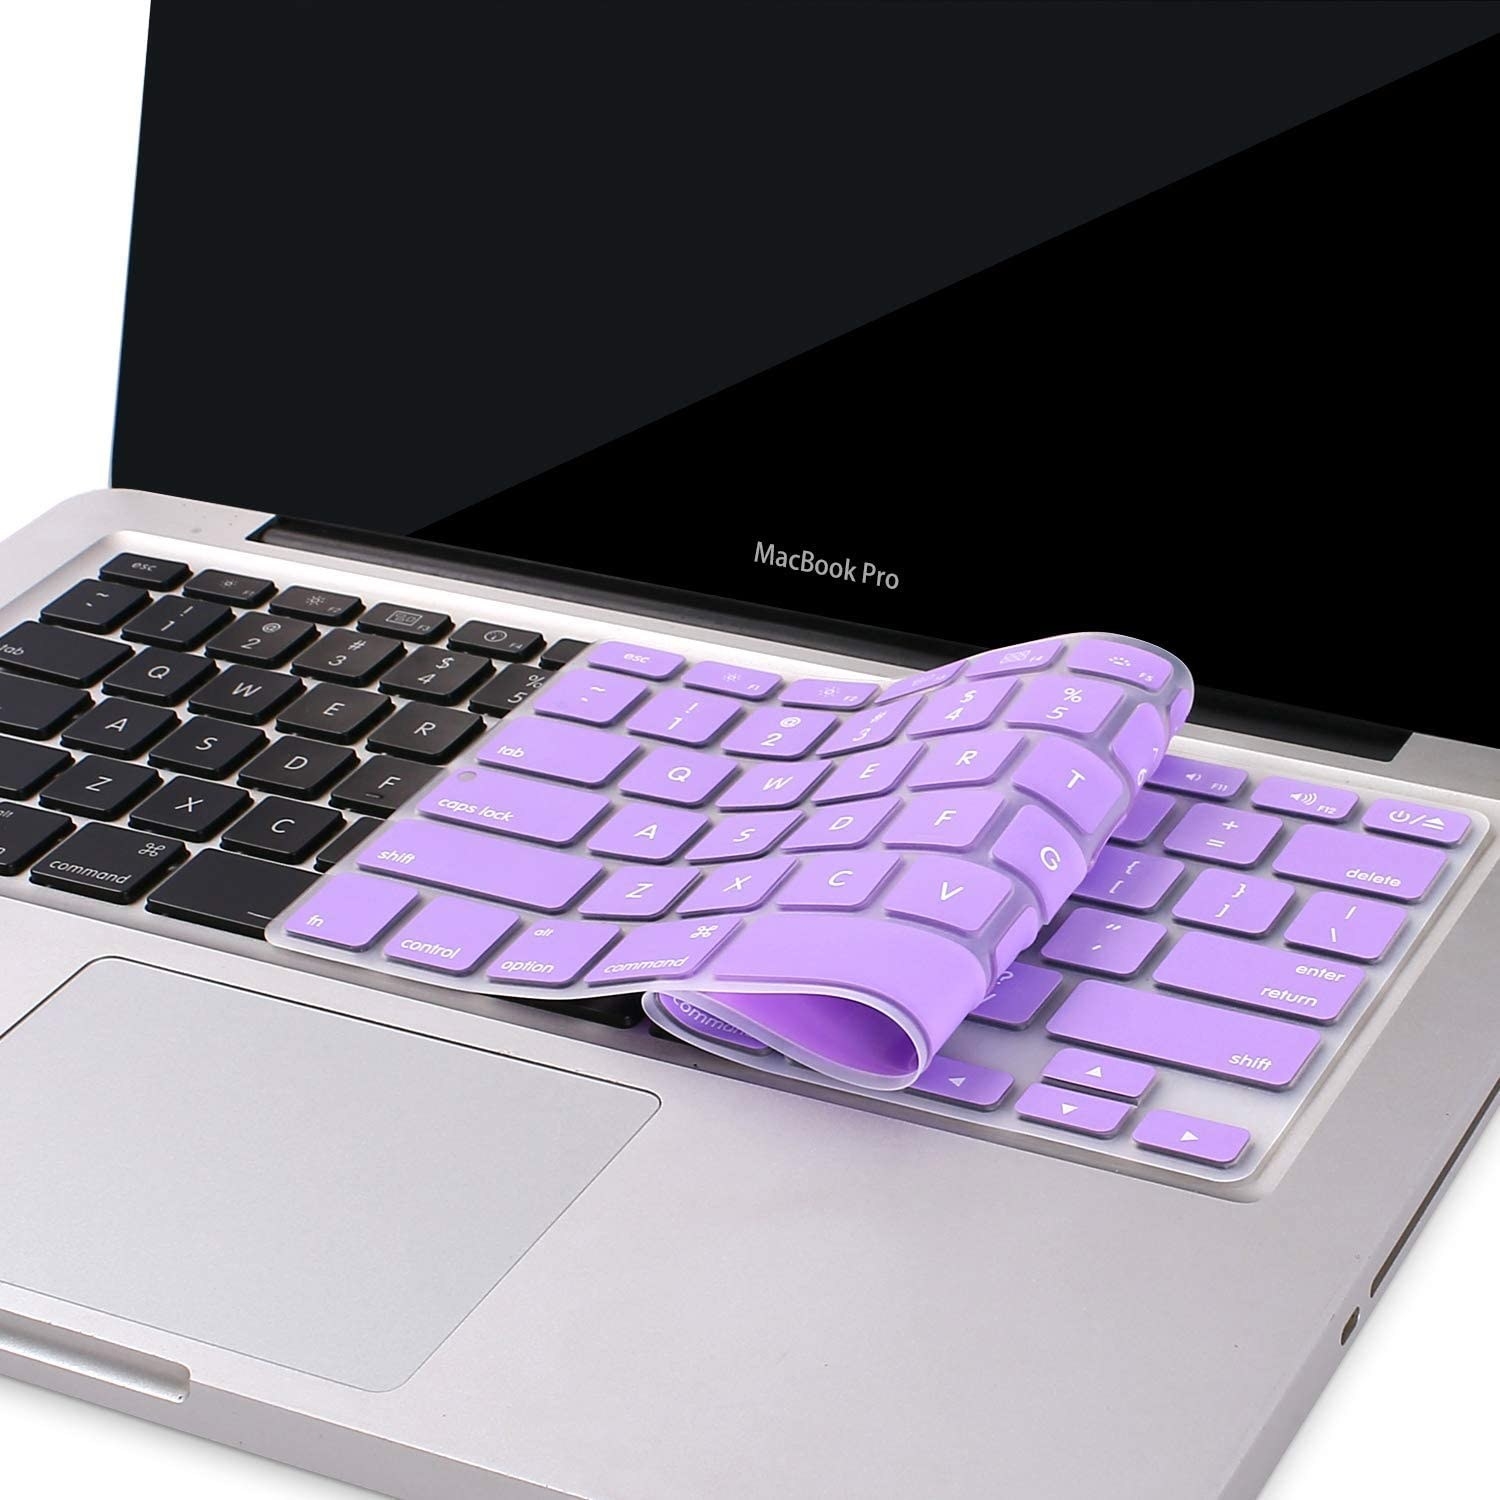 A pastel keyboard folded ontop of a laptop keyboard